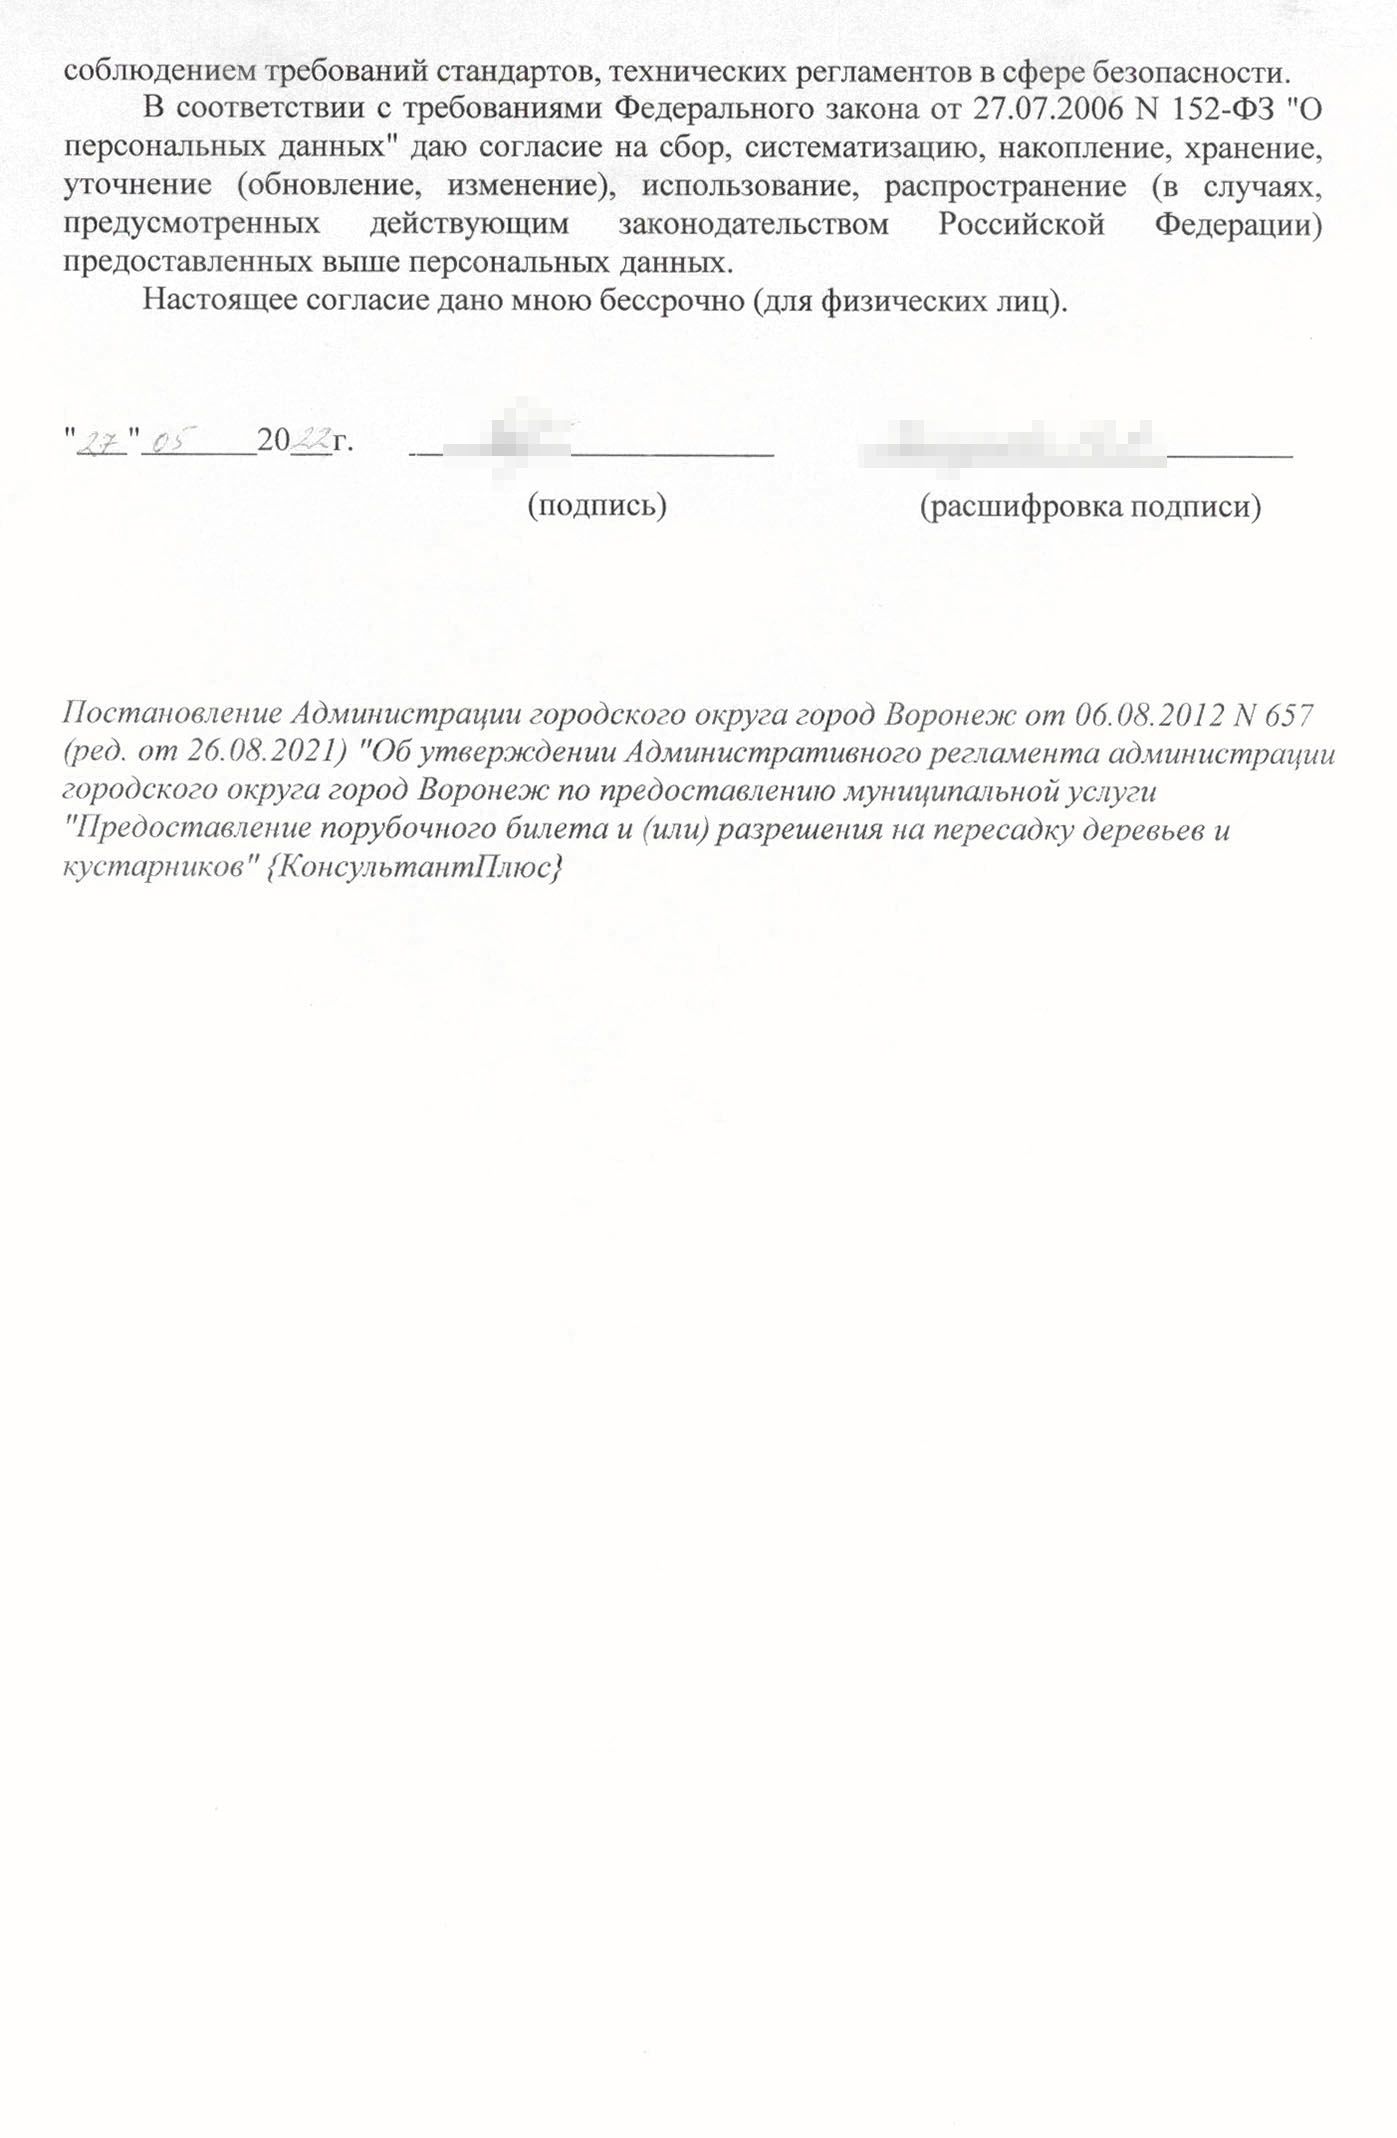 Так может выглядеть образец заявления на порубочный билет в Воронеже